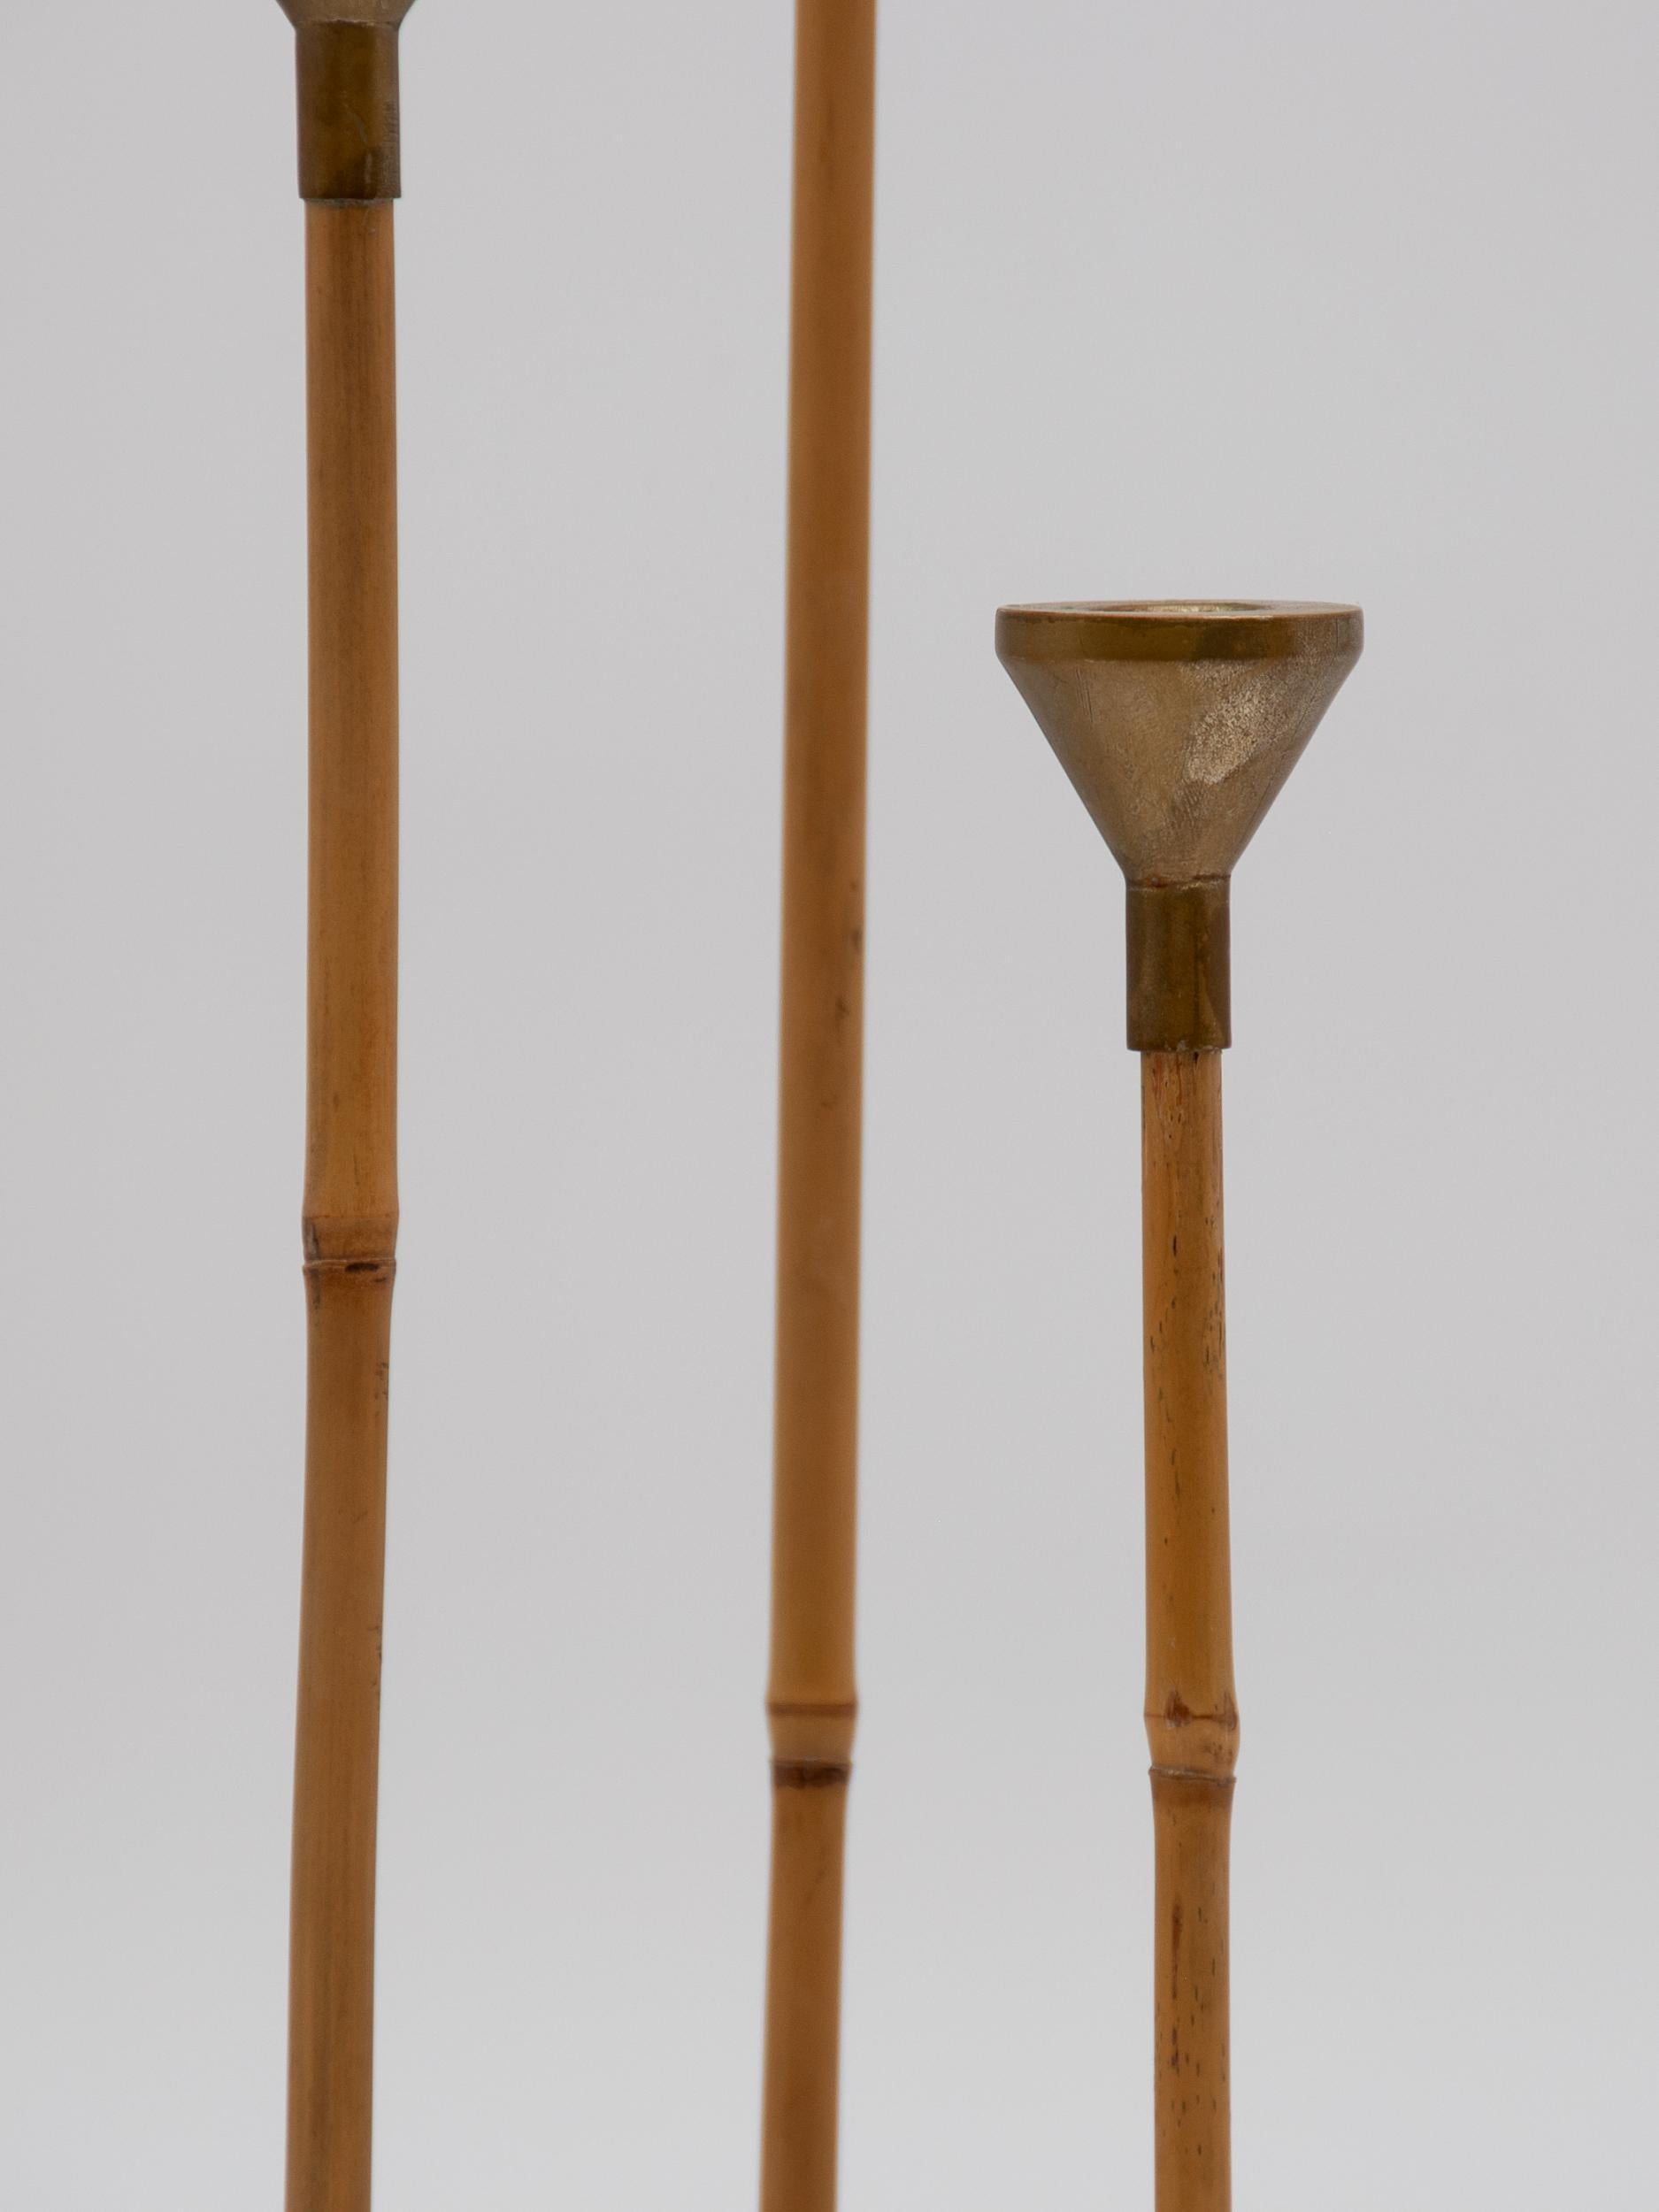 Satz von drei zarten Kerzenhaltern aus Bambus und Messing. Zeitgenössisch und ursprünglich durch Bergdorf Goodman verkauft. 19.5 